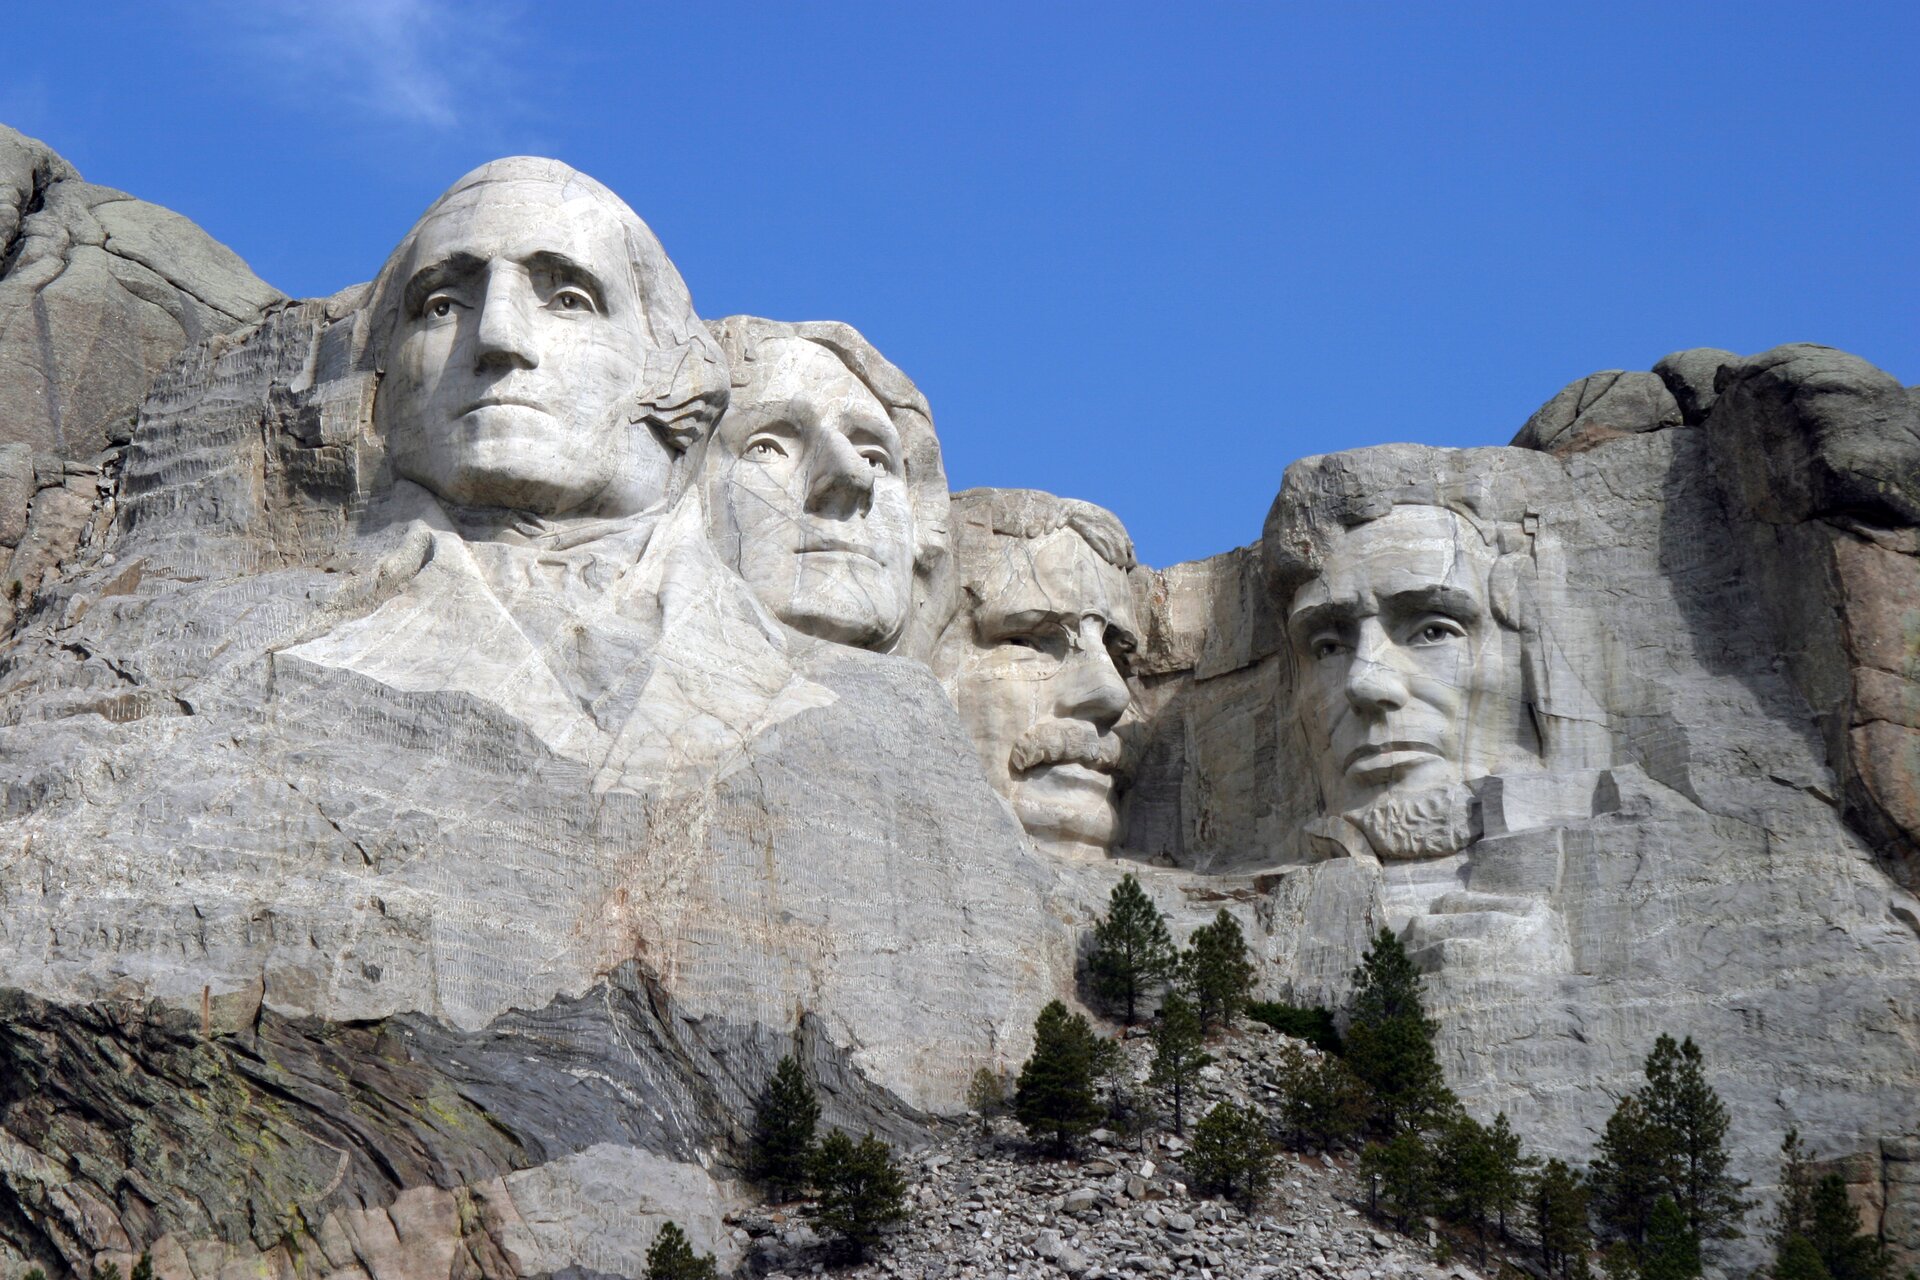 Ilustracja przedstawia „Pomnik Mount Rushmore” autorstwa Gutzona Borglumy. Ukazuje wykute w skałach głowy czterech prezydentów USA. Od lewej są to: George Washington, Thomas Jefferson, Theodore Roosevelt oraz Abraham Lincoln. Mimika postaci wskazuje na powagę.